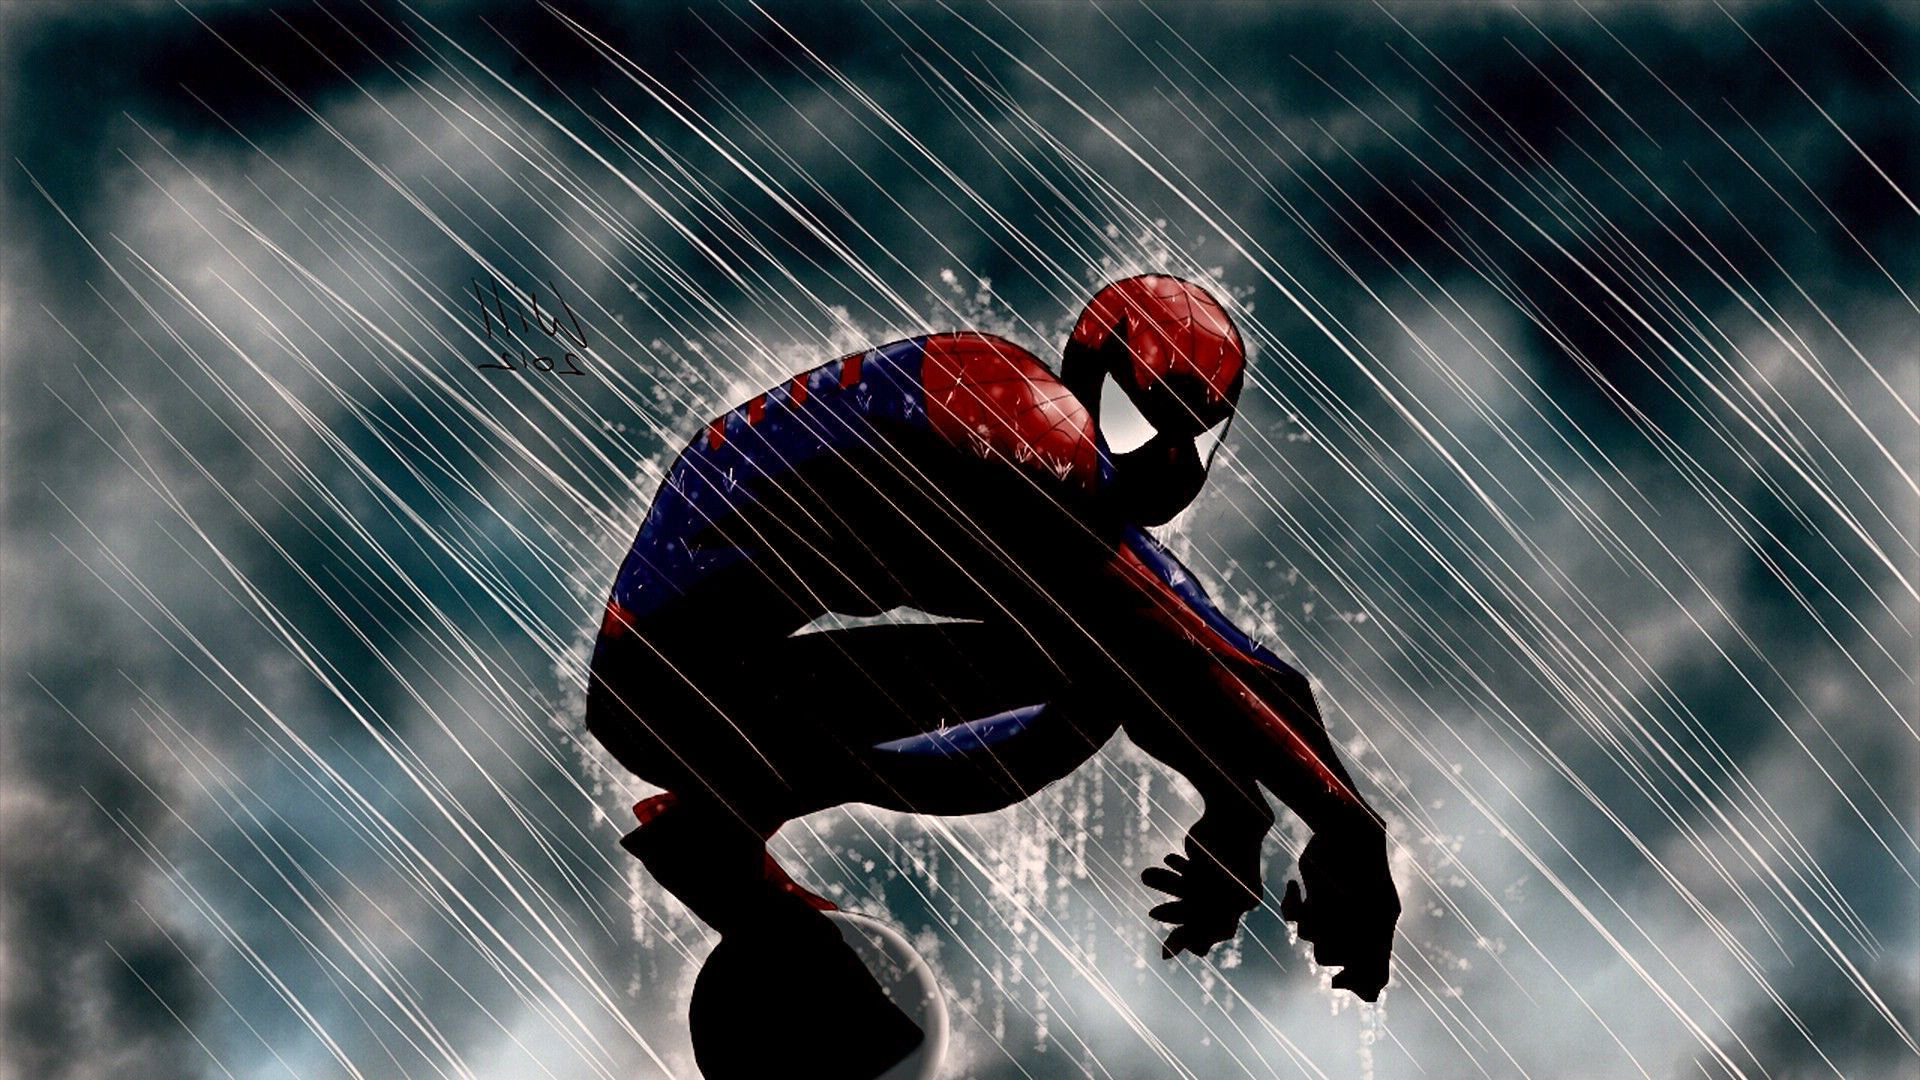 spiderman fond d'écran hd 1920x1080,homme araignée,l'eau,personnage fictif,super héros,sport extrême